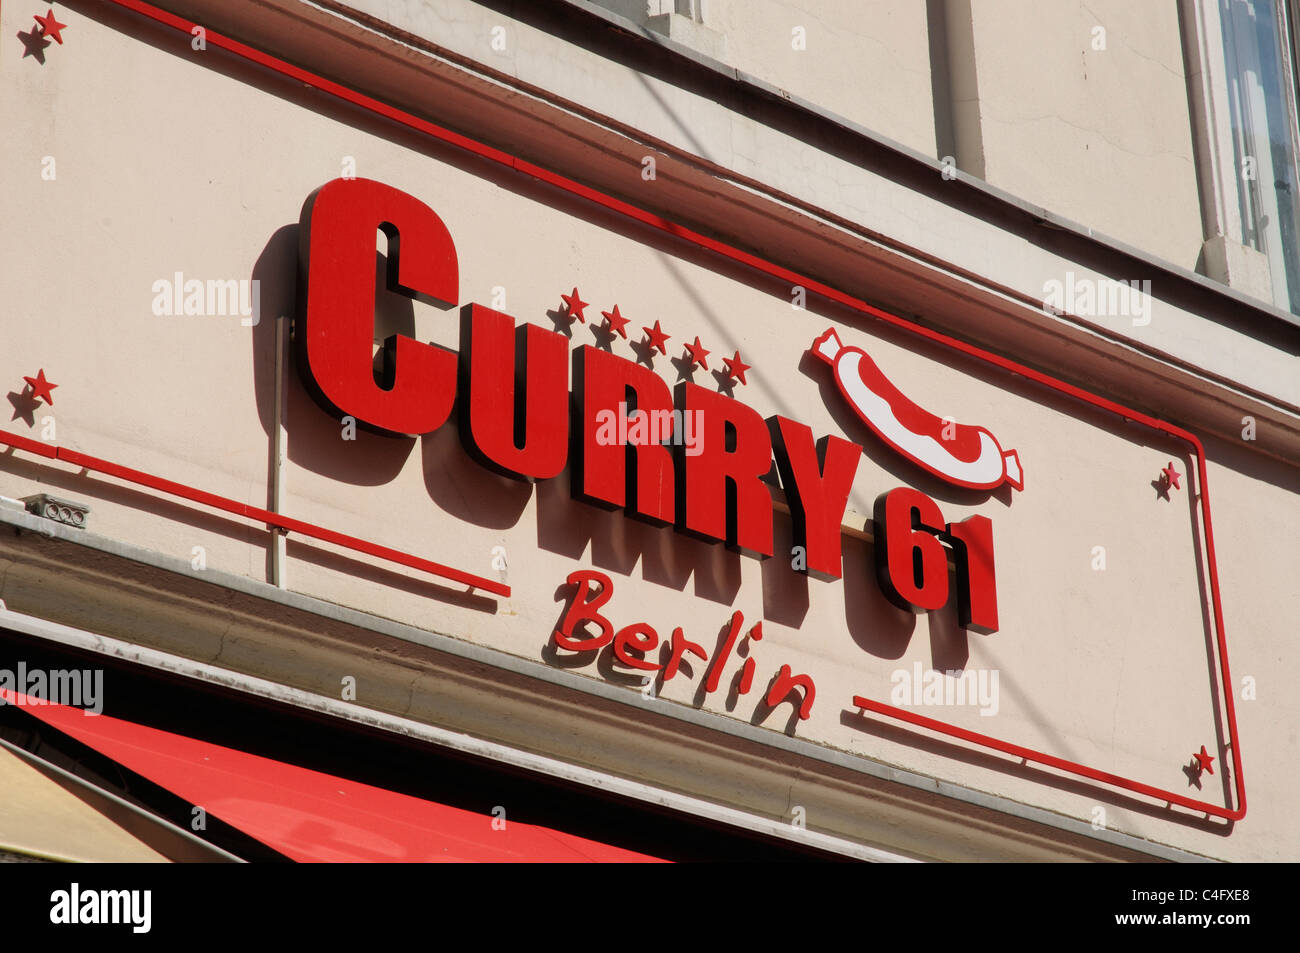 Selbst-LKW-Dekoration am Eingang Der Curry Wurstwurst in Berlin  Redaktionelles Stockfoto - Bild von deutsch, küche: 174033913